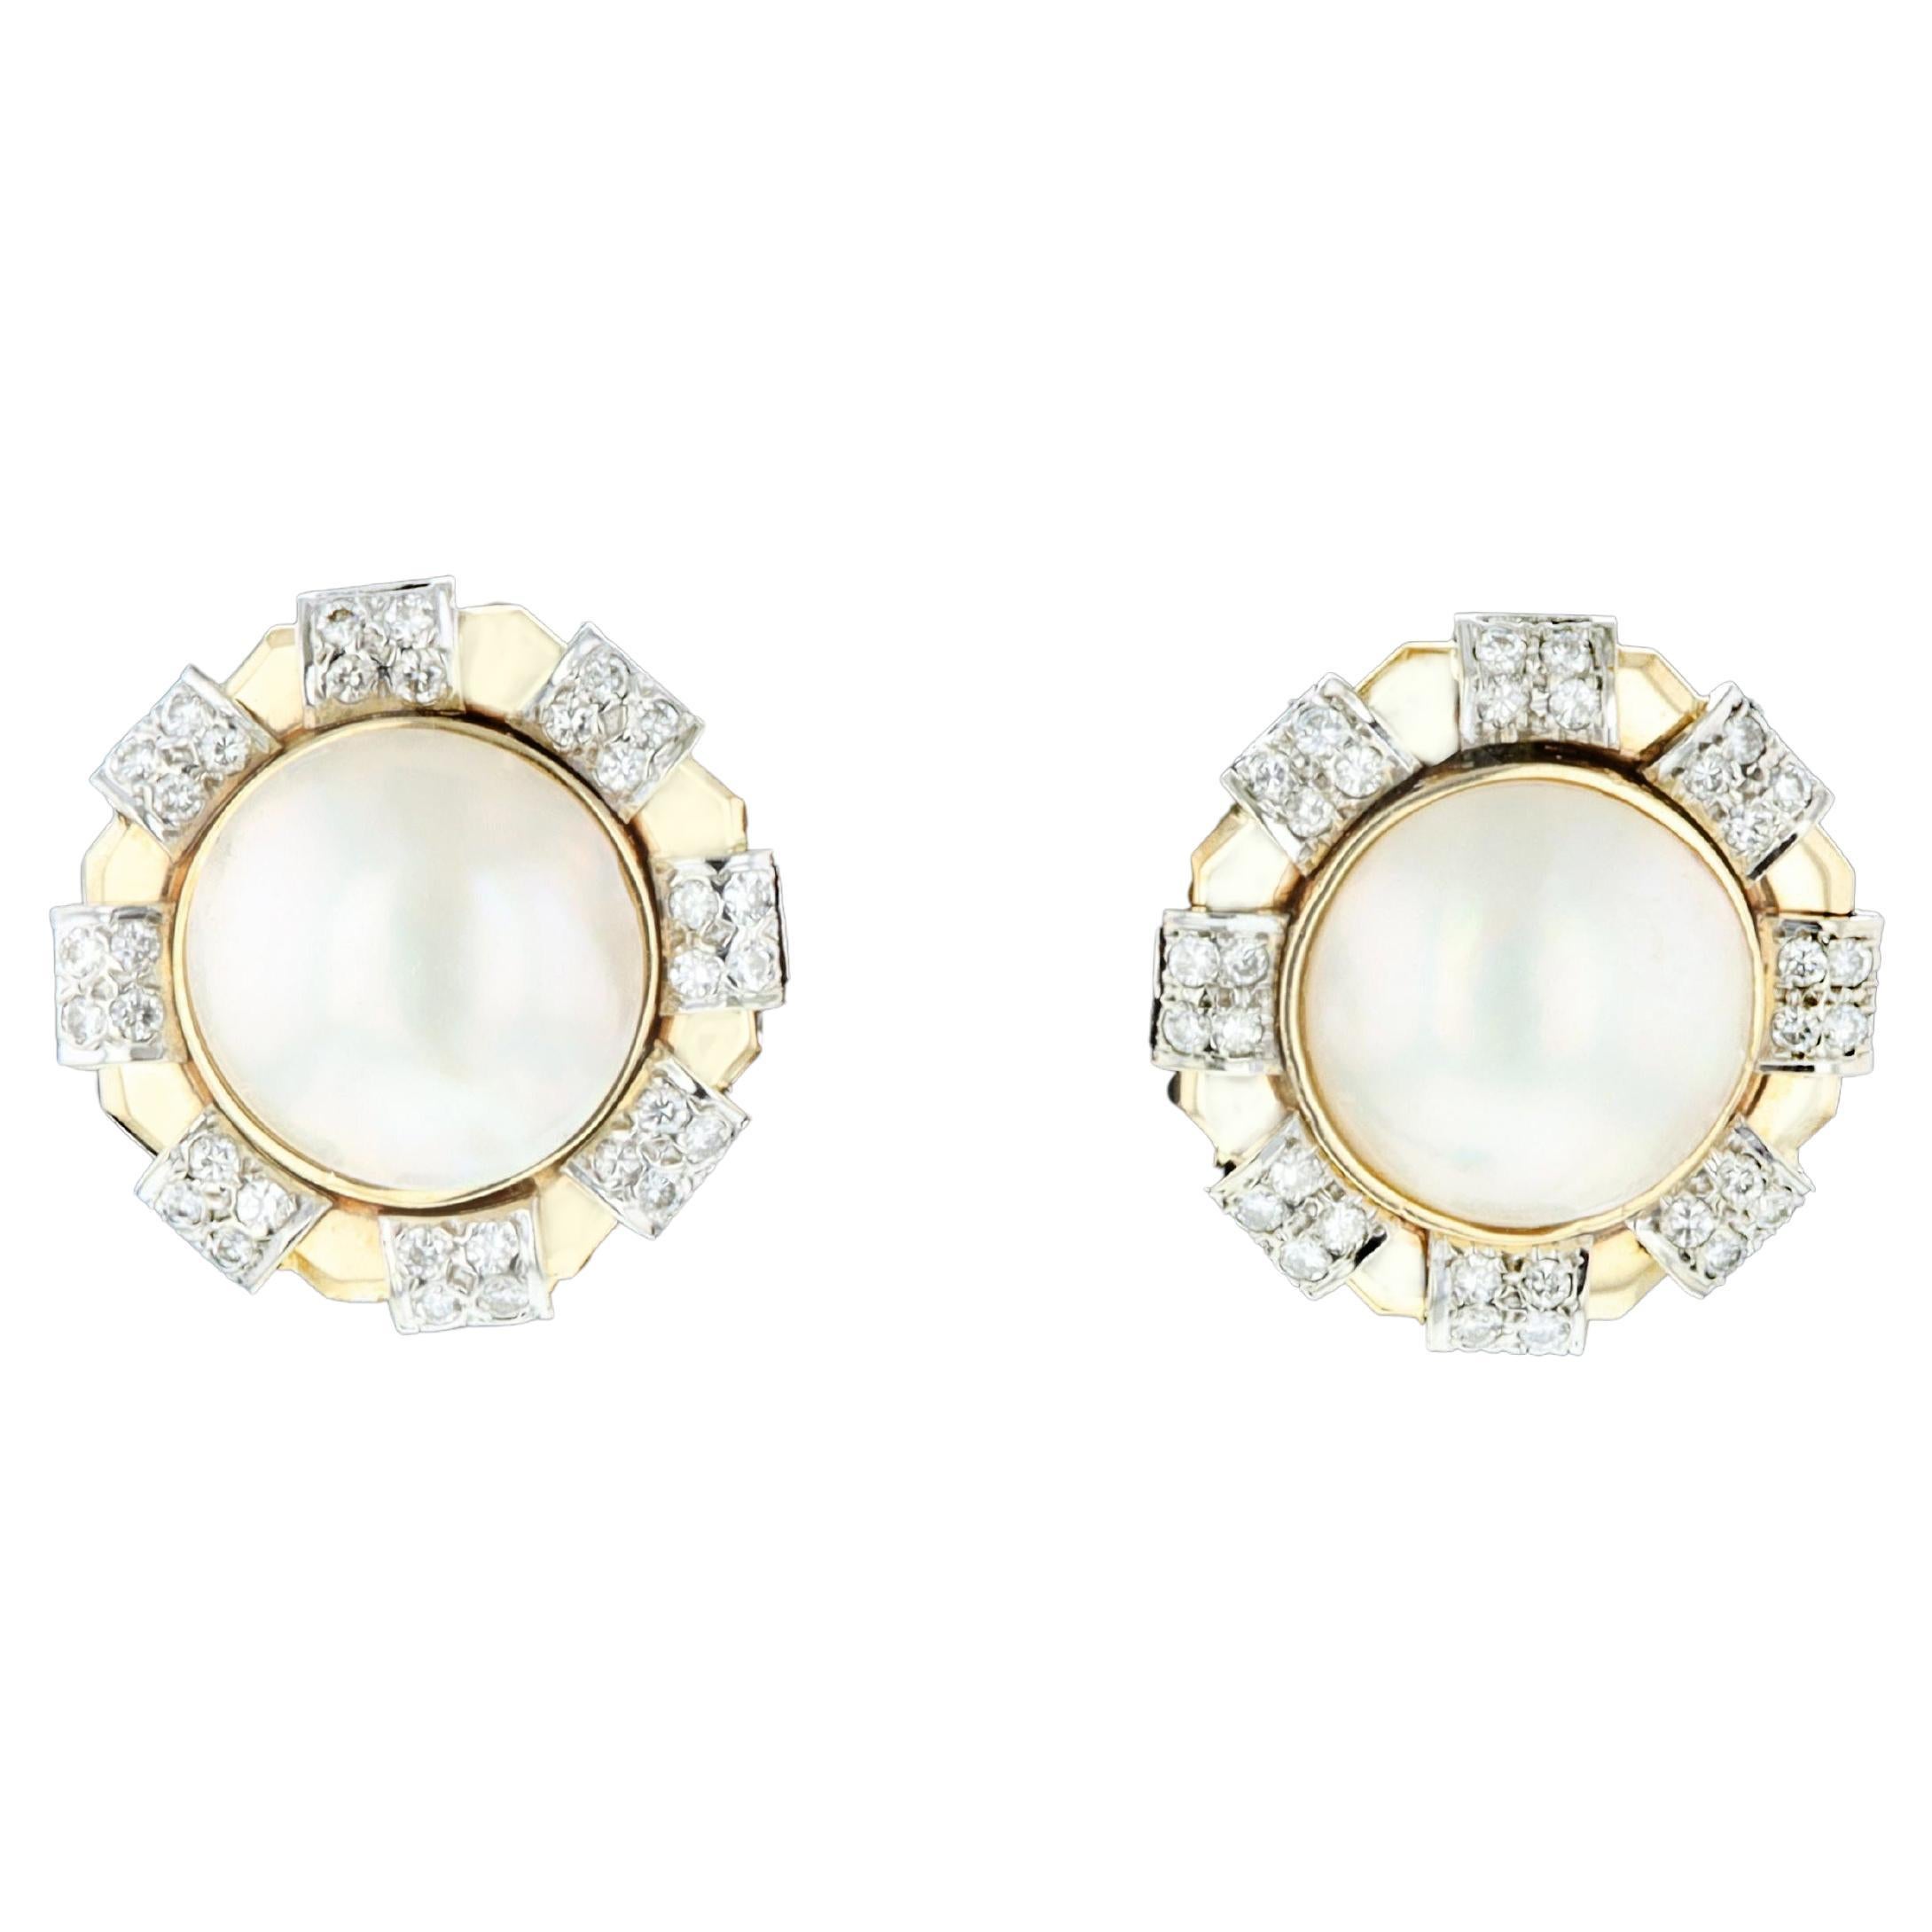 Mabe-Perlen- und Diamant-Ohrringe